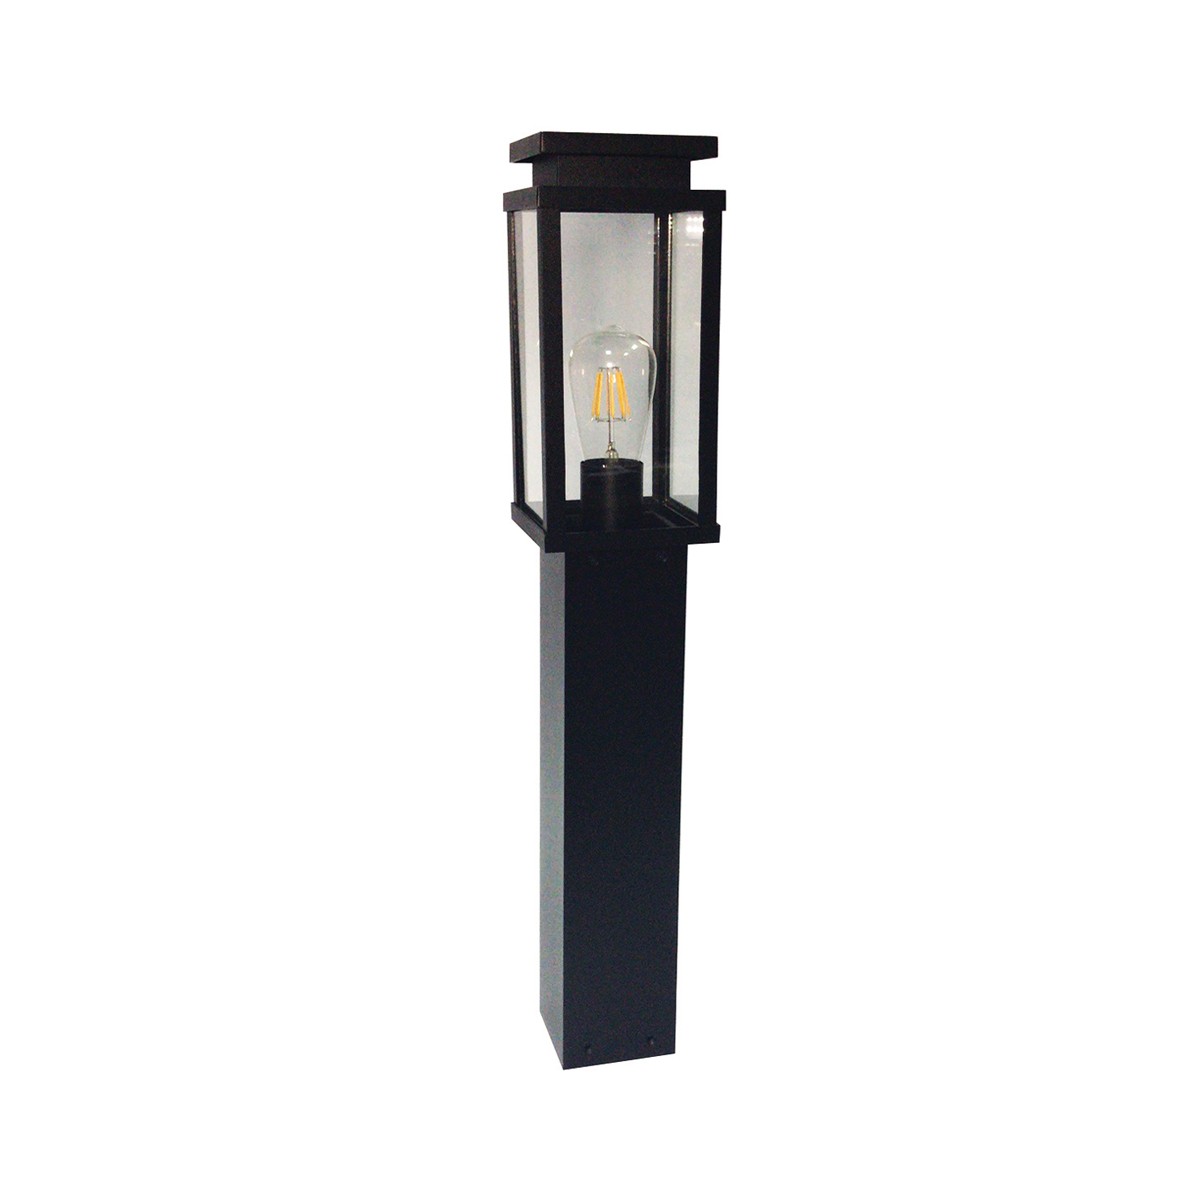 Φωτιστικό Φανάρι Αλουμινίου ΚολώναIP33 E27 800mm Μαύρο Χρώμα       VK/03066/80/B